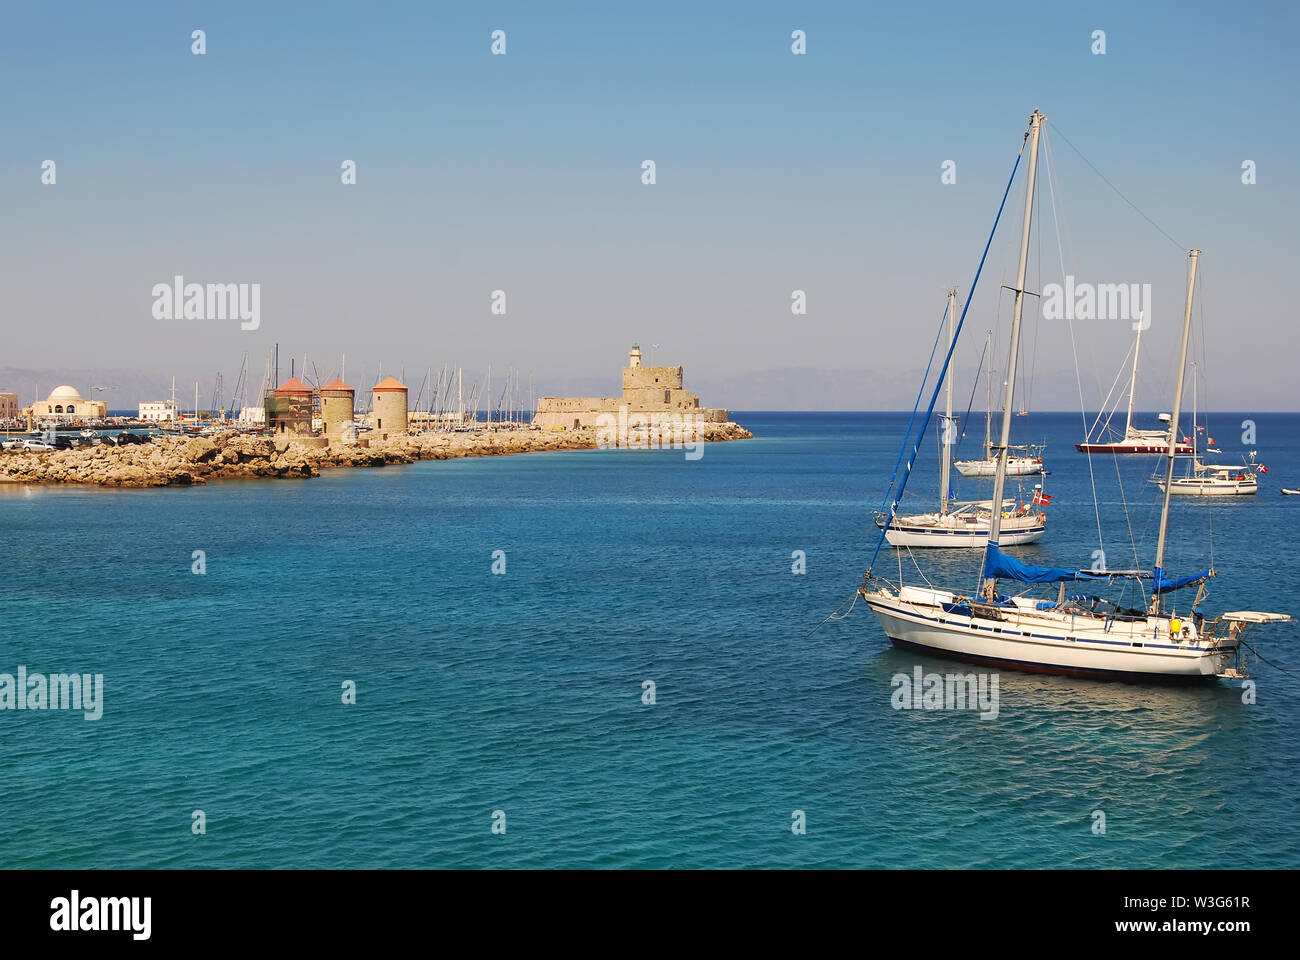 Rhodes : Fort de Saint Nikolas, grec moulins à vent. Yachts dans le port de Mandraki Banque D'Images